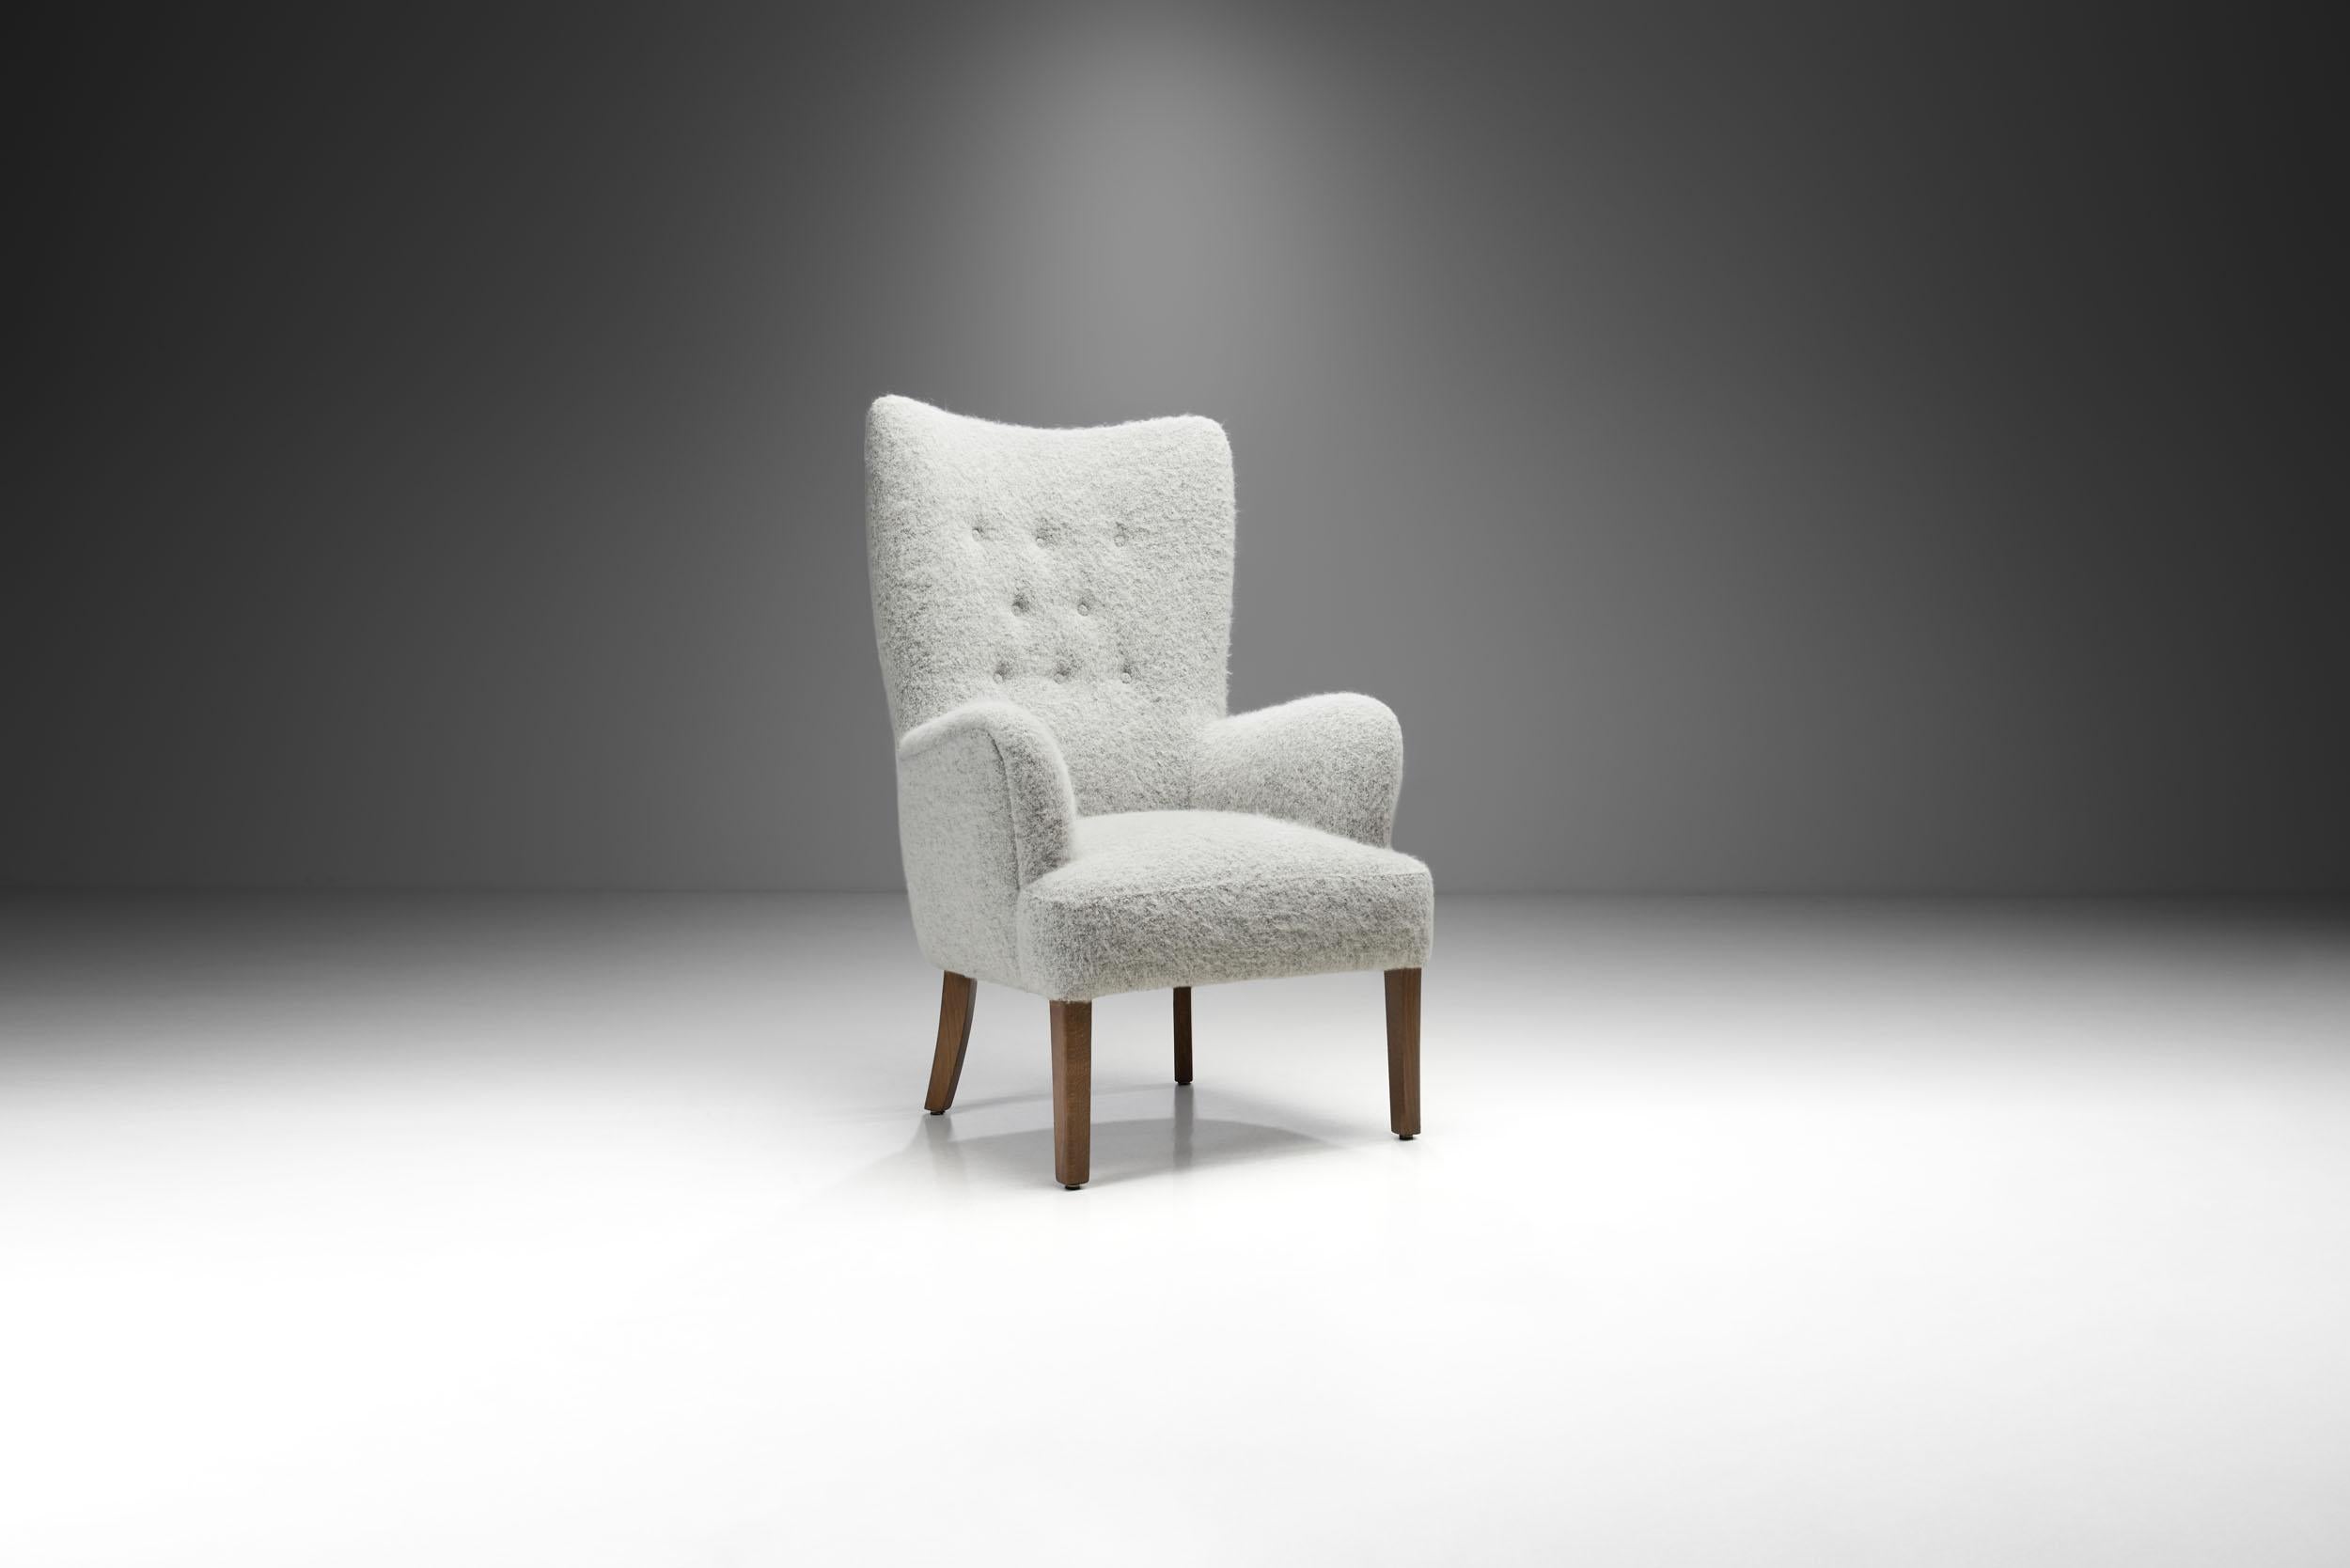 L'esthétique simple et raffinée de cette chaise découle de la réinvention des formes classiques par Ole Wanscher, pour laquelle il est devenu un acteur clé du mouvement danois du milieu du siècle.

Dans ce modèle, Wanscher a combiné pleinement et